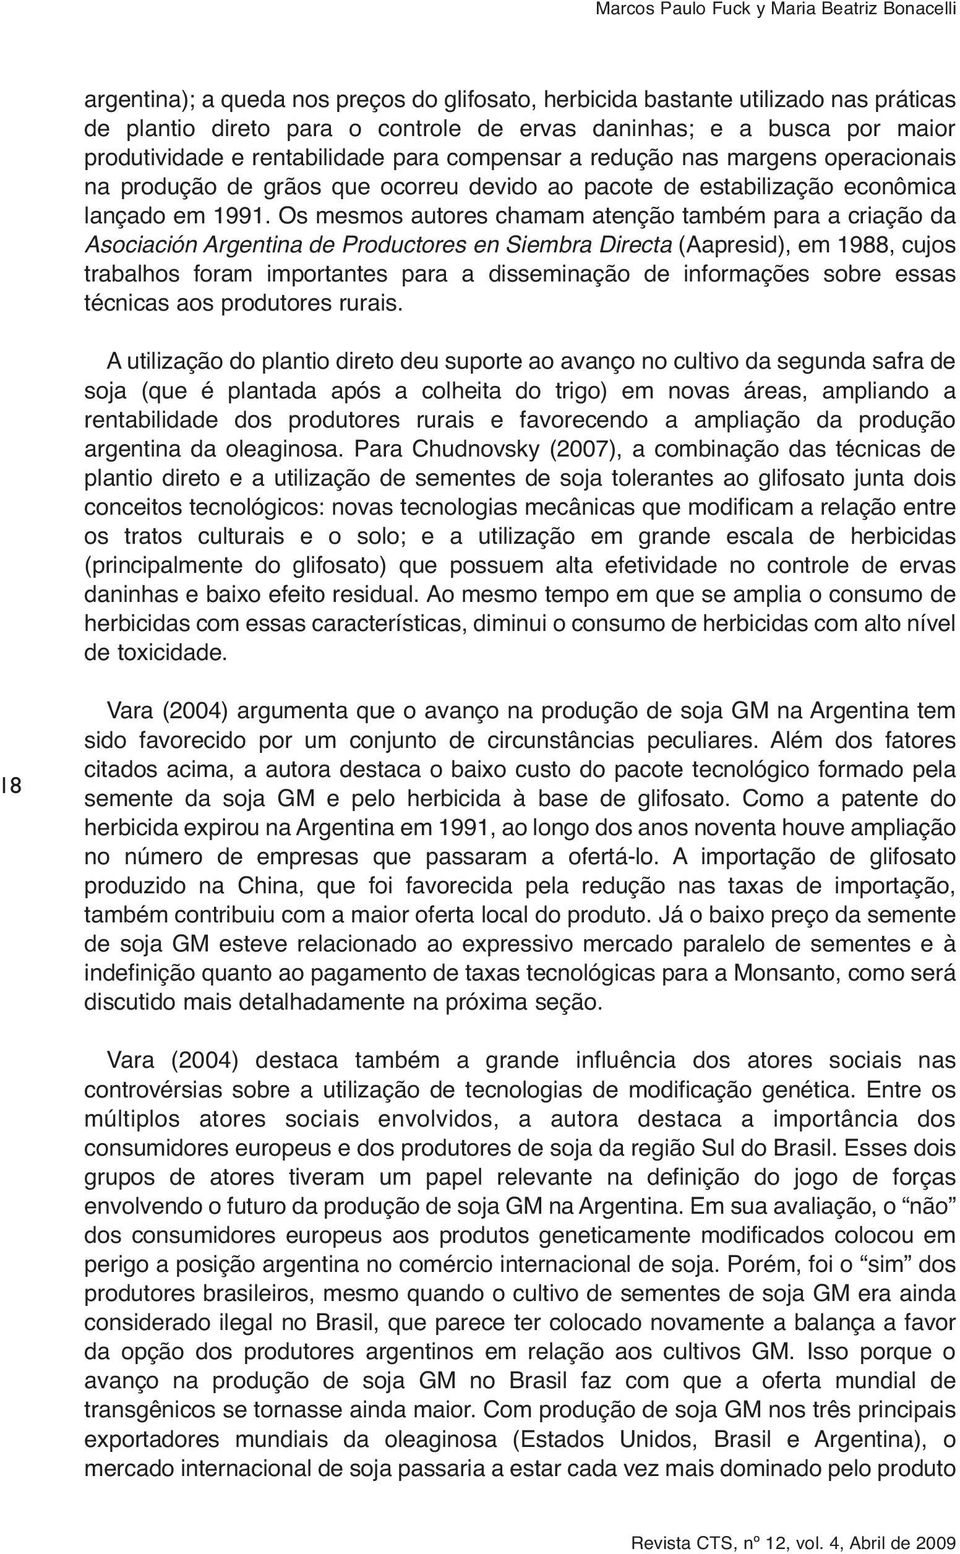 Os mesmos autores chamam atenção também para a criação da Asociación Argentina de Productores en Siembra Directa (Aapresid), em 1988, cujos trabalhos foram importantes para a disseminação de